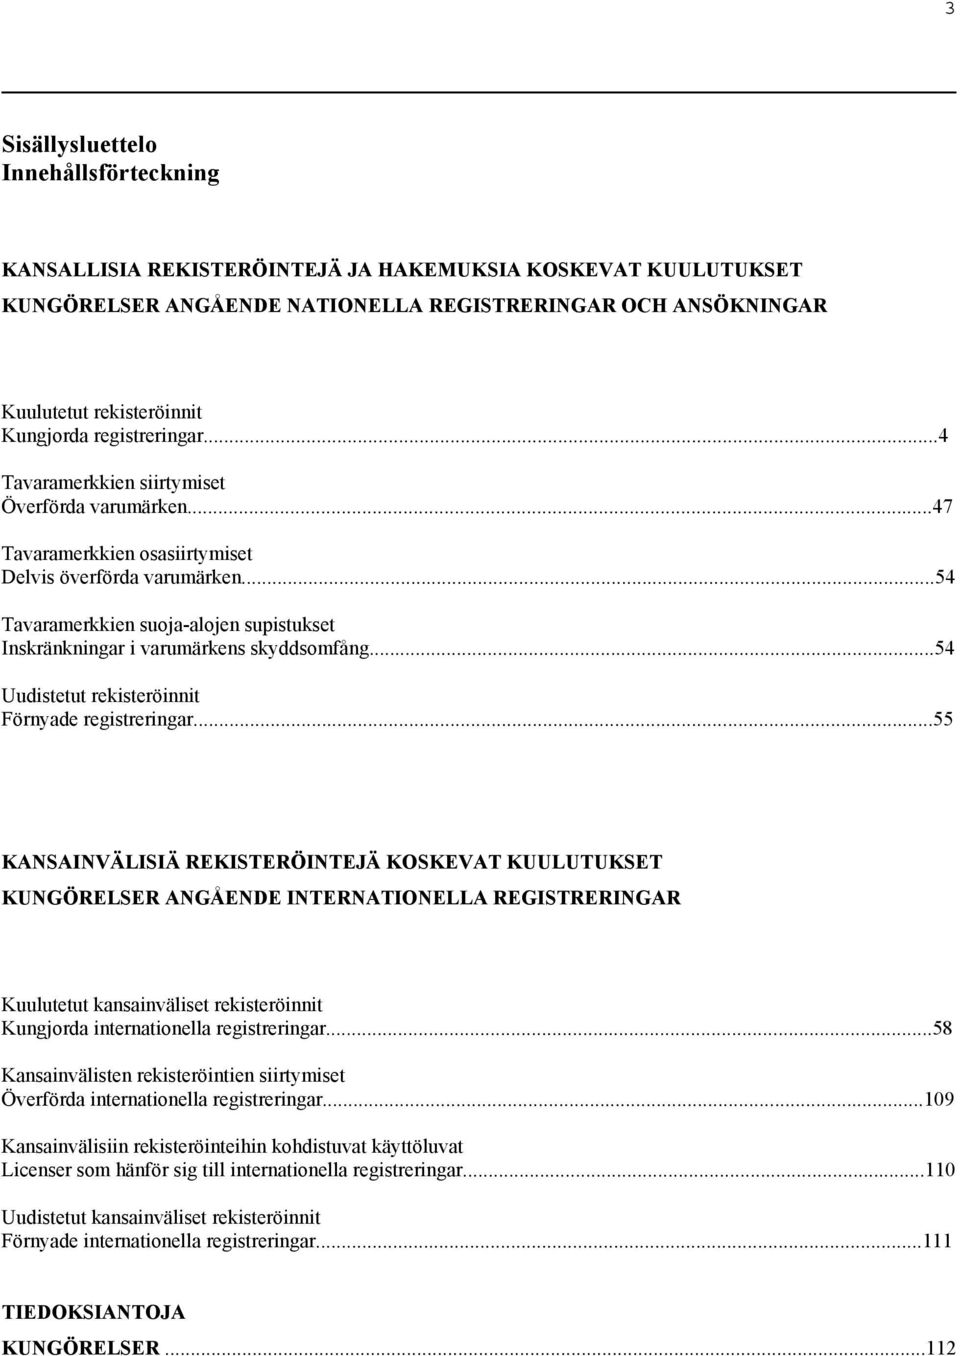 ..54 Tavaramerkkien suoja-alojen supistukset Inskränkningar i varumärkens skyddsomfång...54 Uudistetut rekisteröinnit Förnyade registreringar.